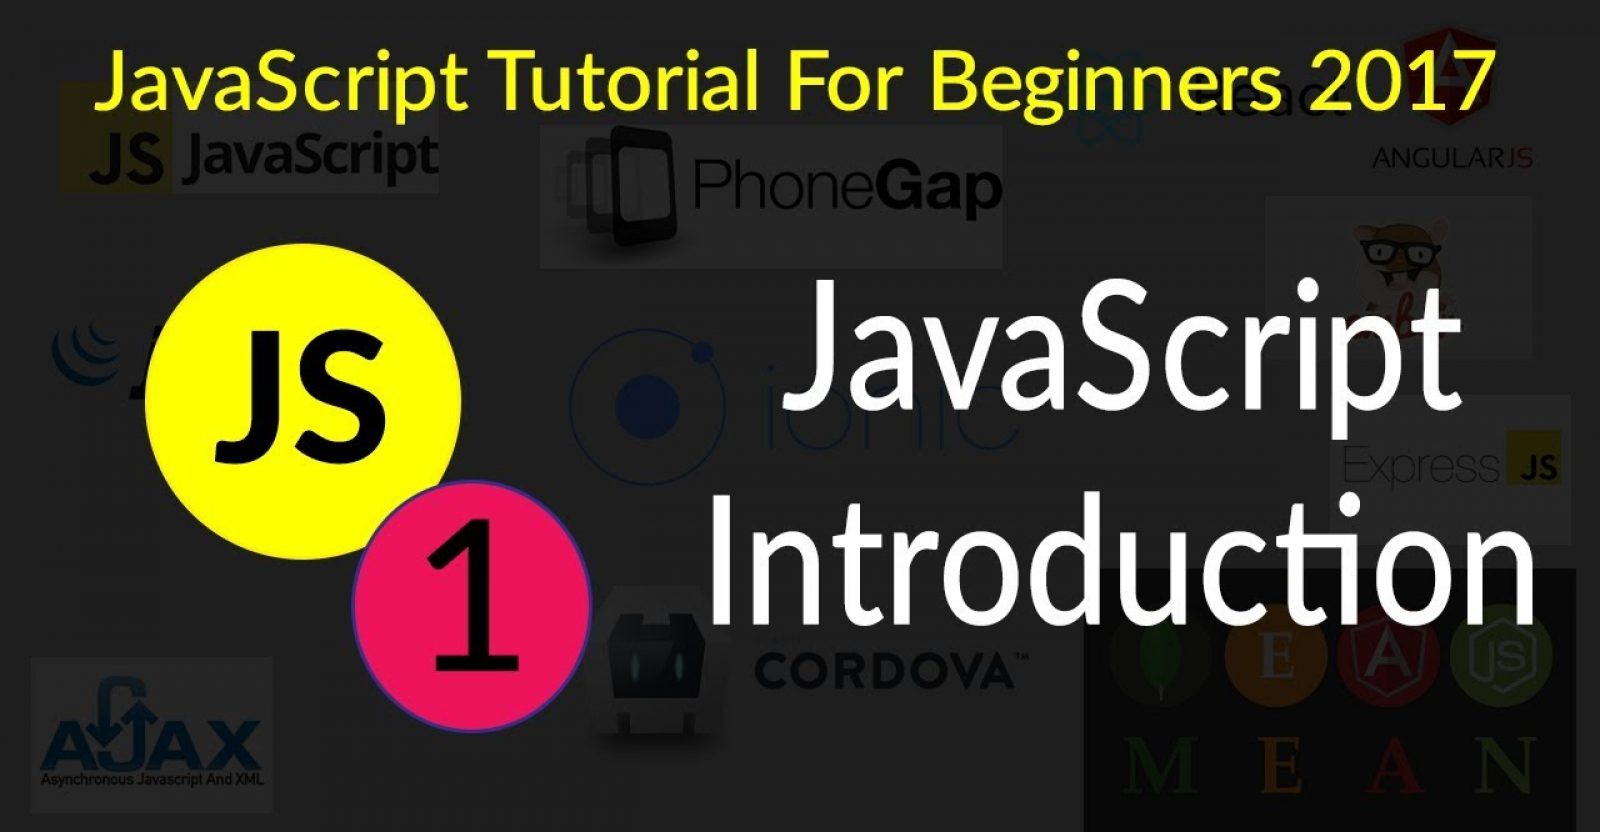 javascript basics for beginners